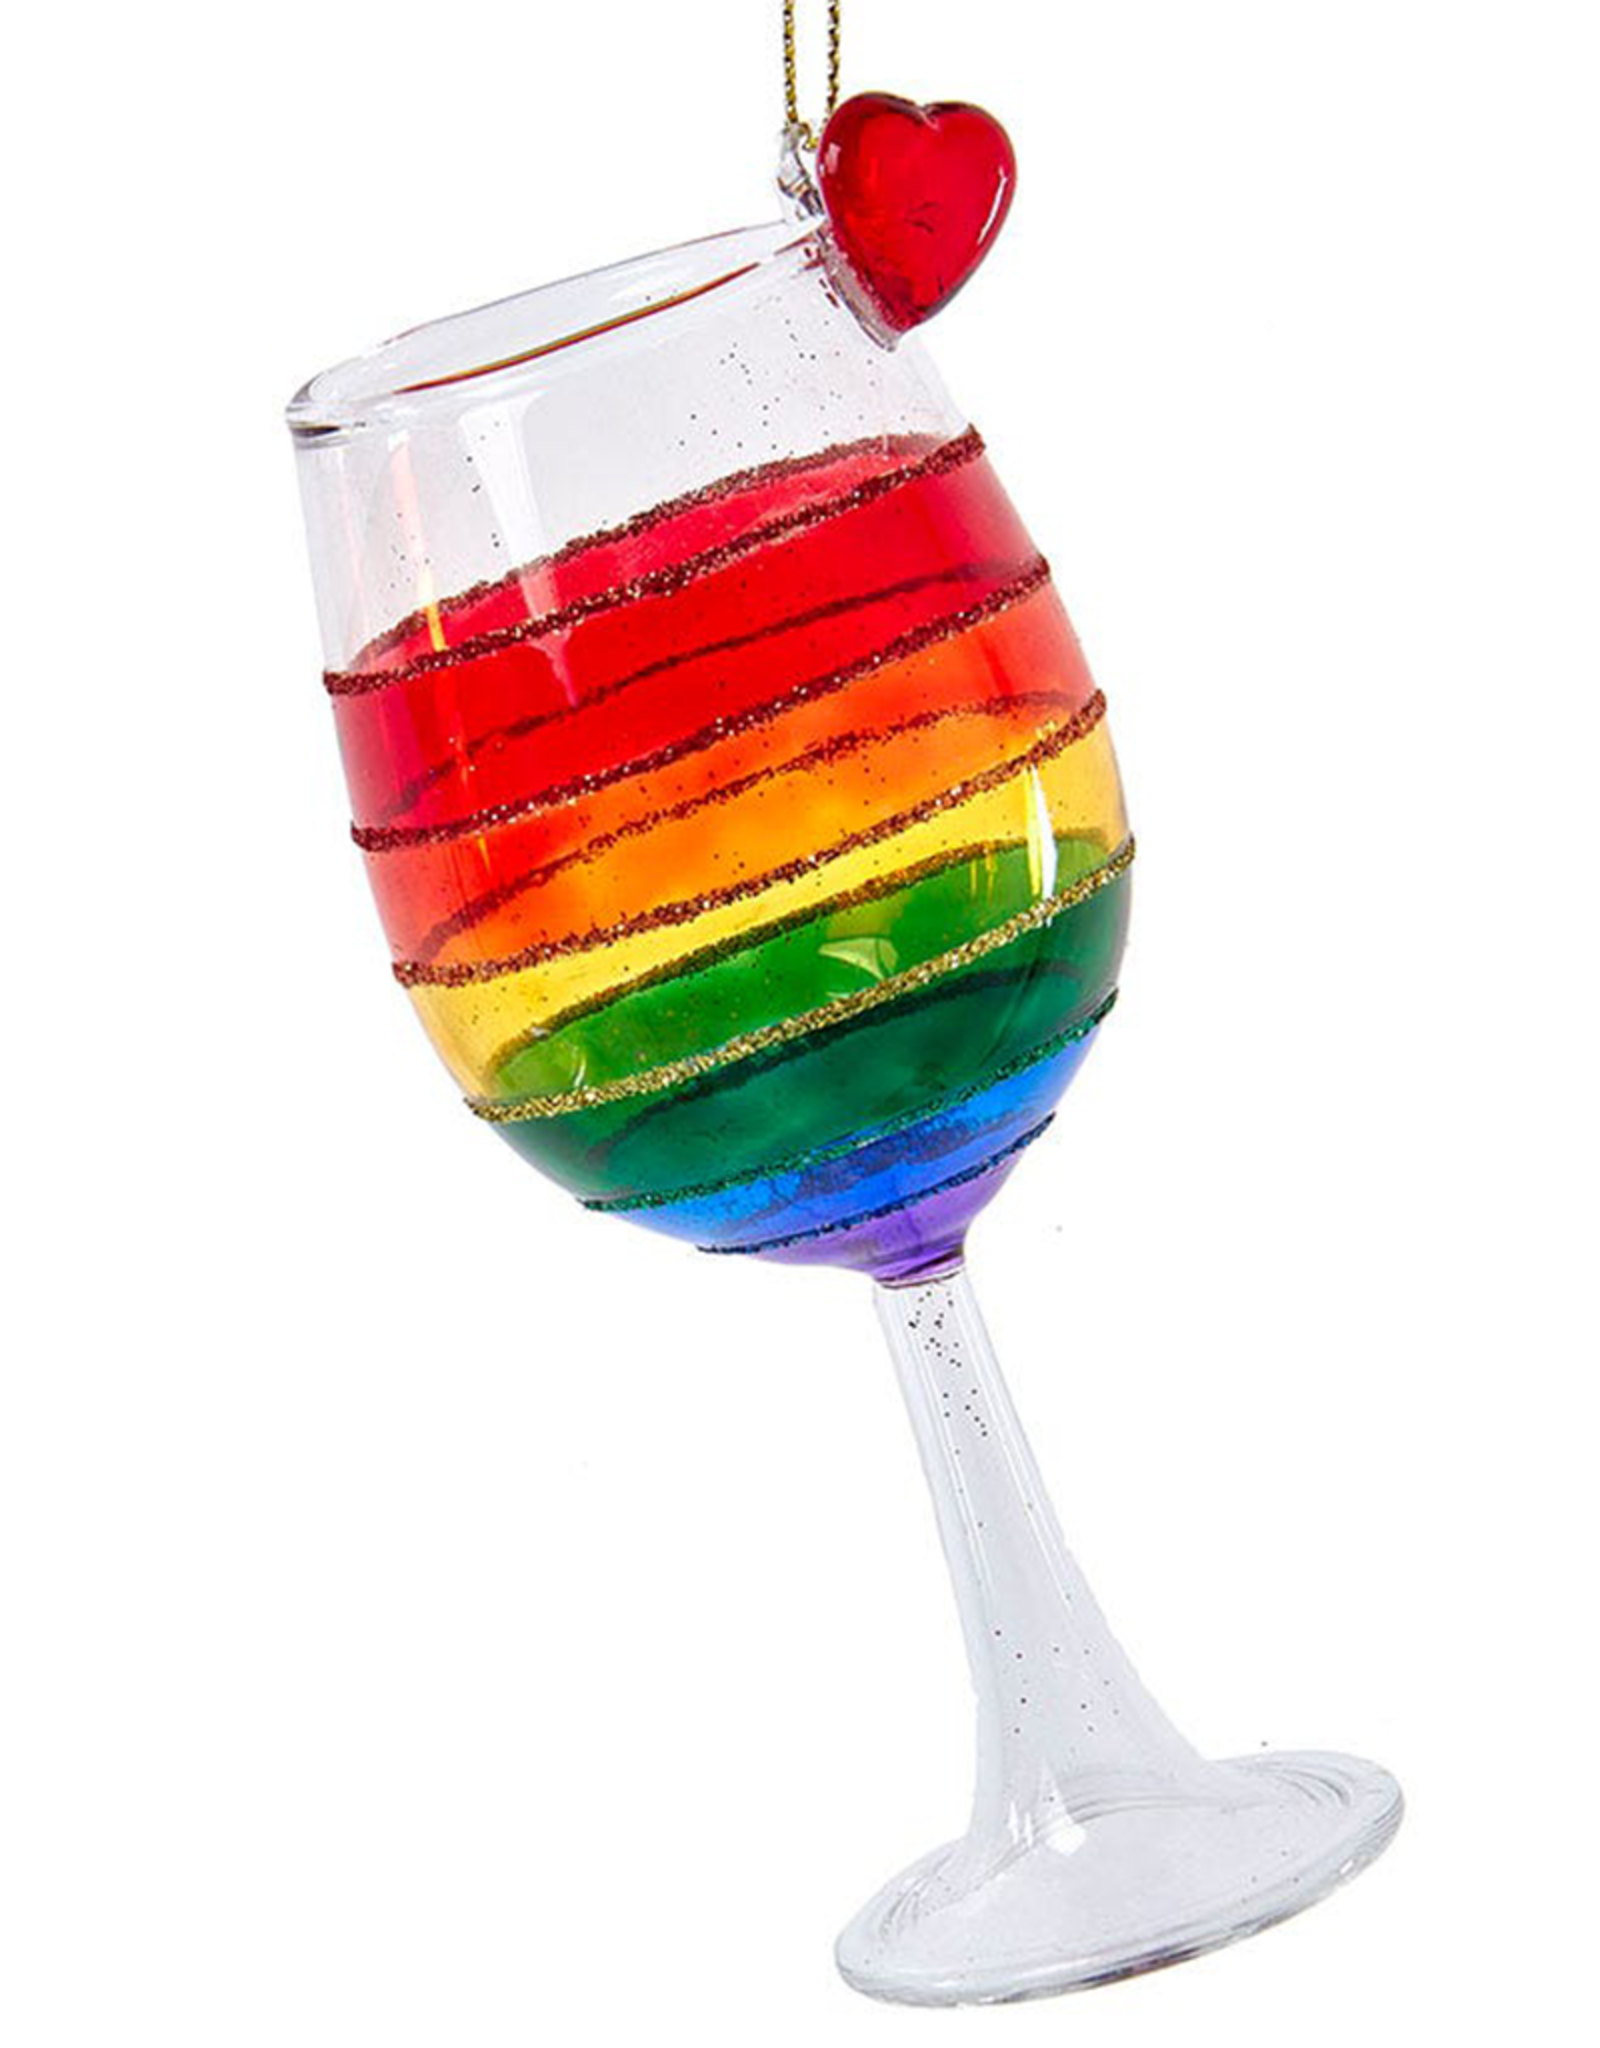 Kurt Adler Pride Glass Wine Glass Ornament